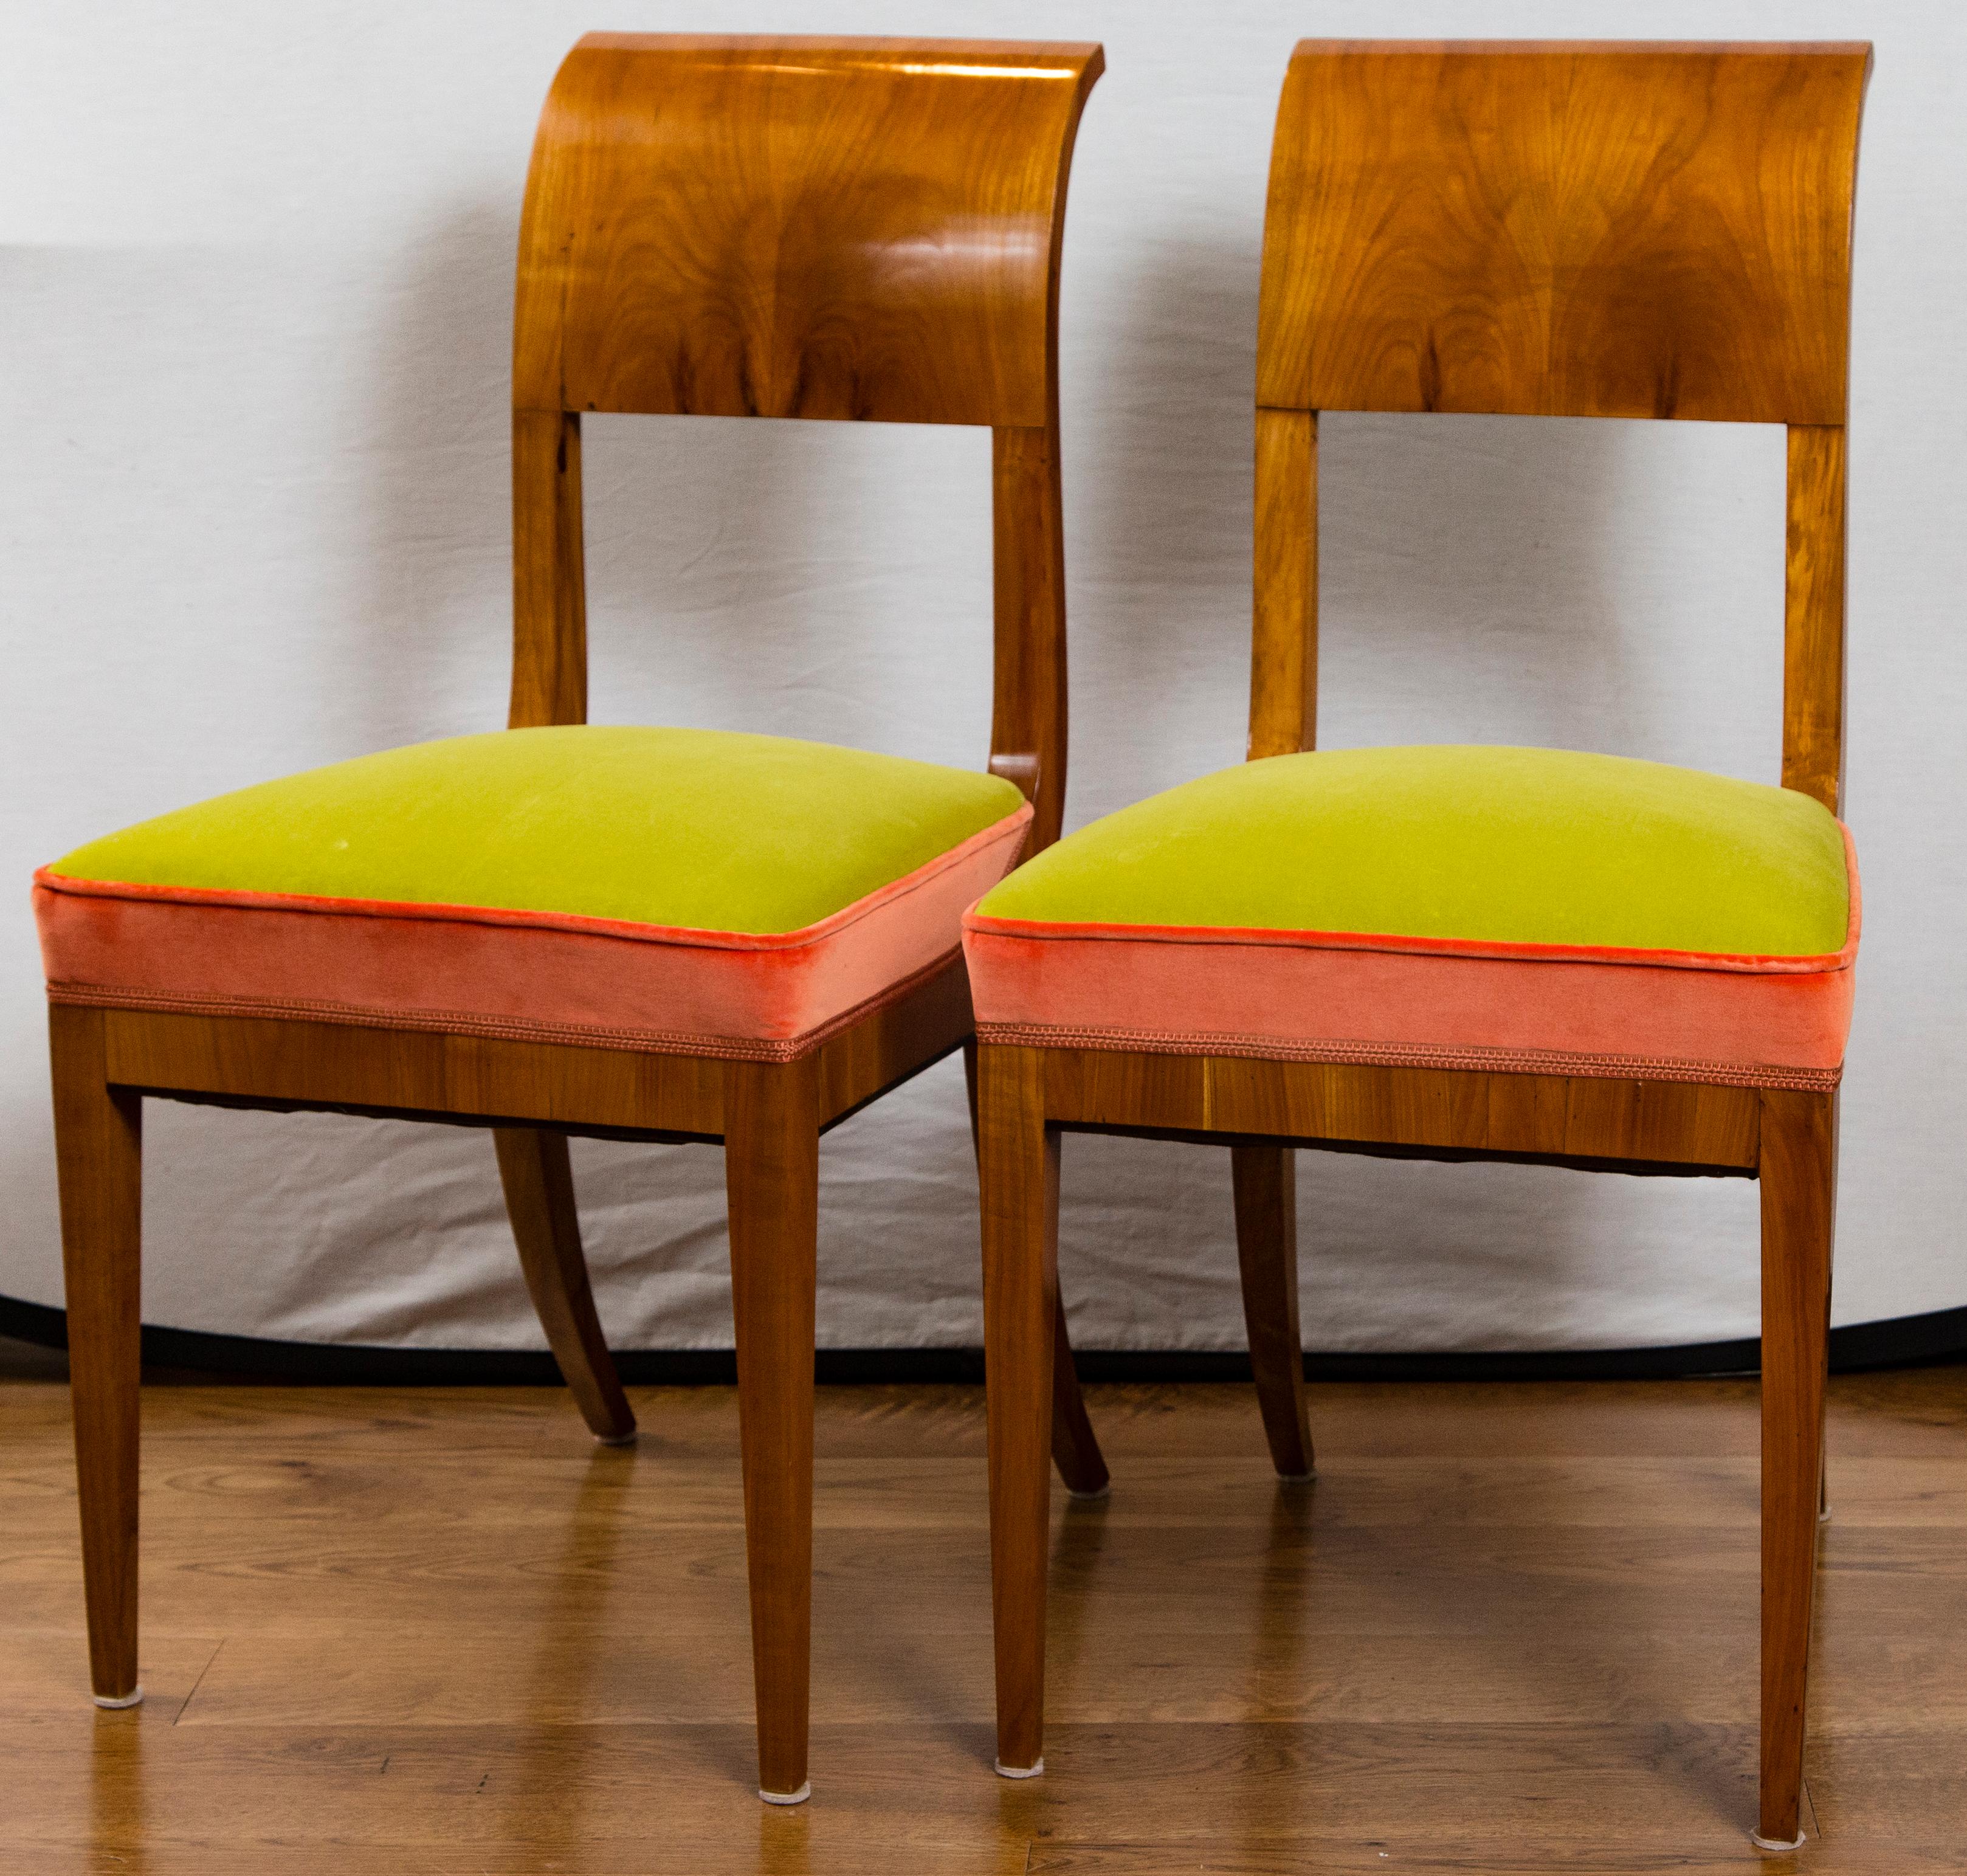 Ces chaises Biedermeier néoclassiques en placage de noyer chaleureux ont une forme sublime, 3 disponibles, prix à l'unité, notez la taille généreuse de l'assise.
Datation : vers 1820
Origine : probablement Vienne
Condit : Excellent état robuste,